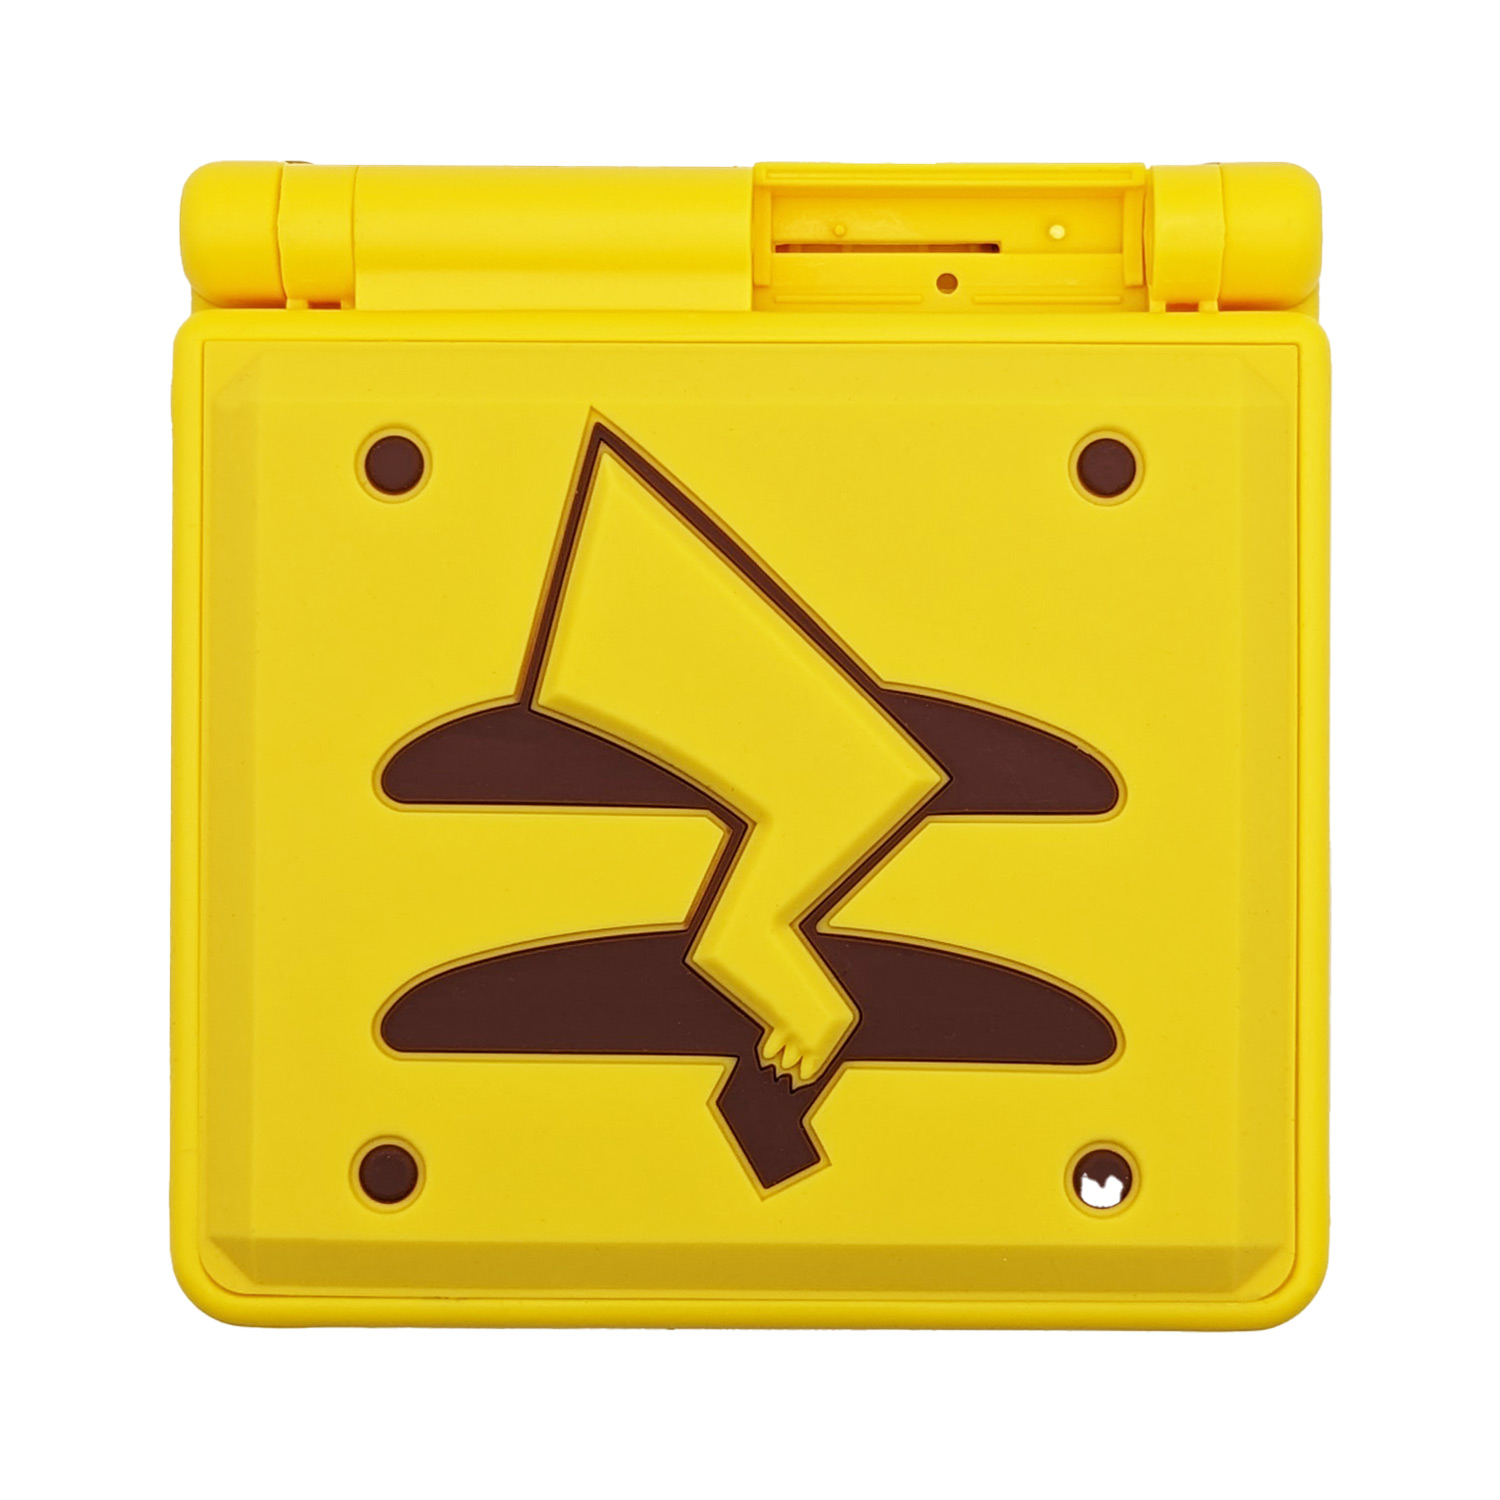 Gehäuse (Pikachu) für Game Boy Advance SP